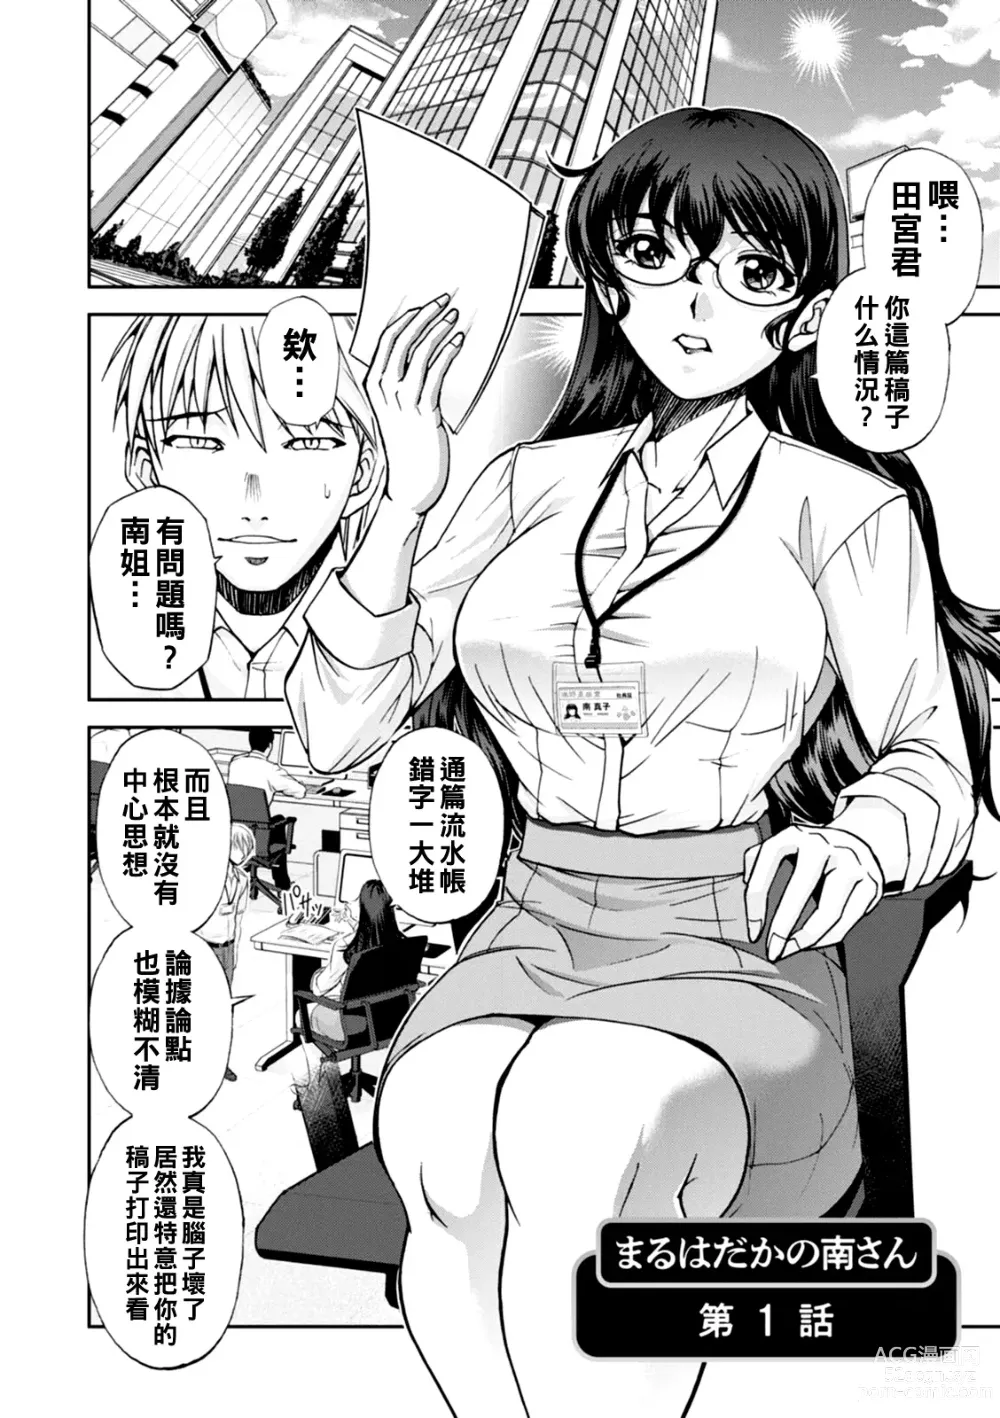 Page 5 of manga Maruhadaka no Minami-san Ch. 1-4